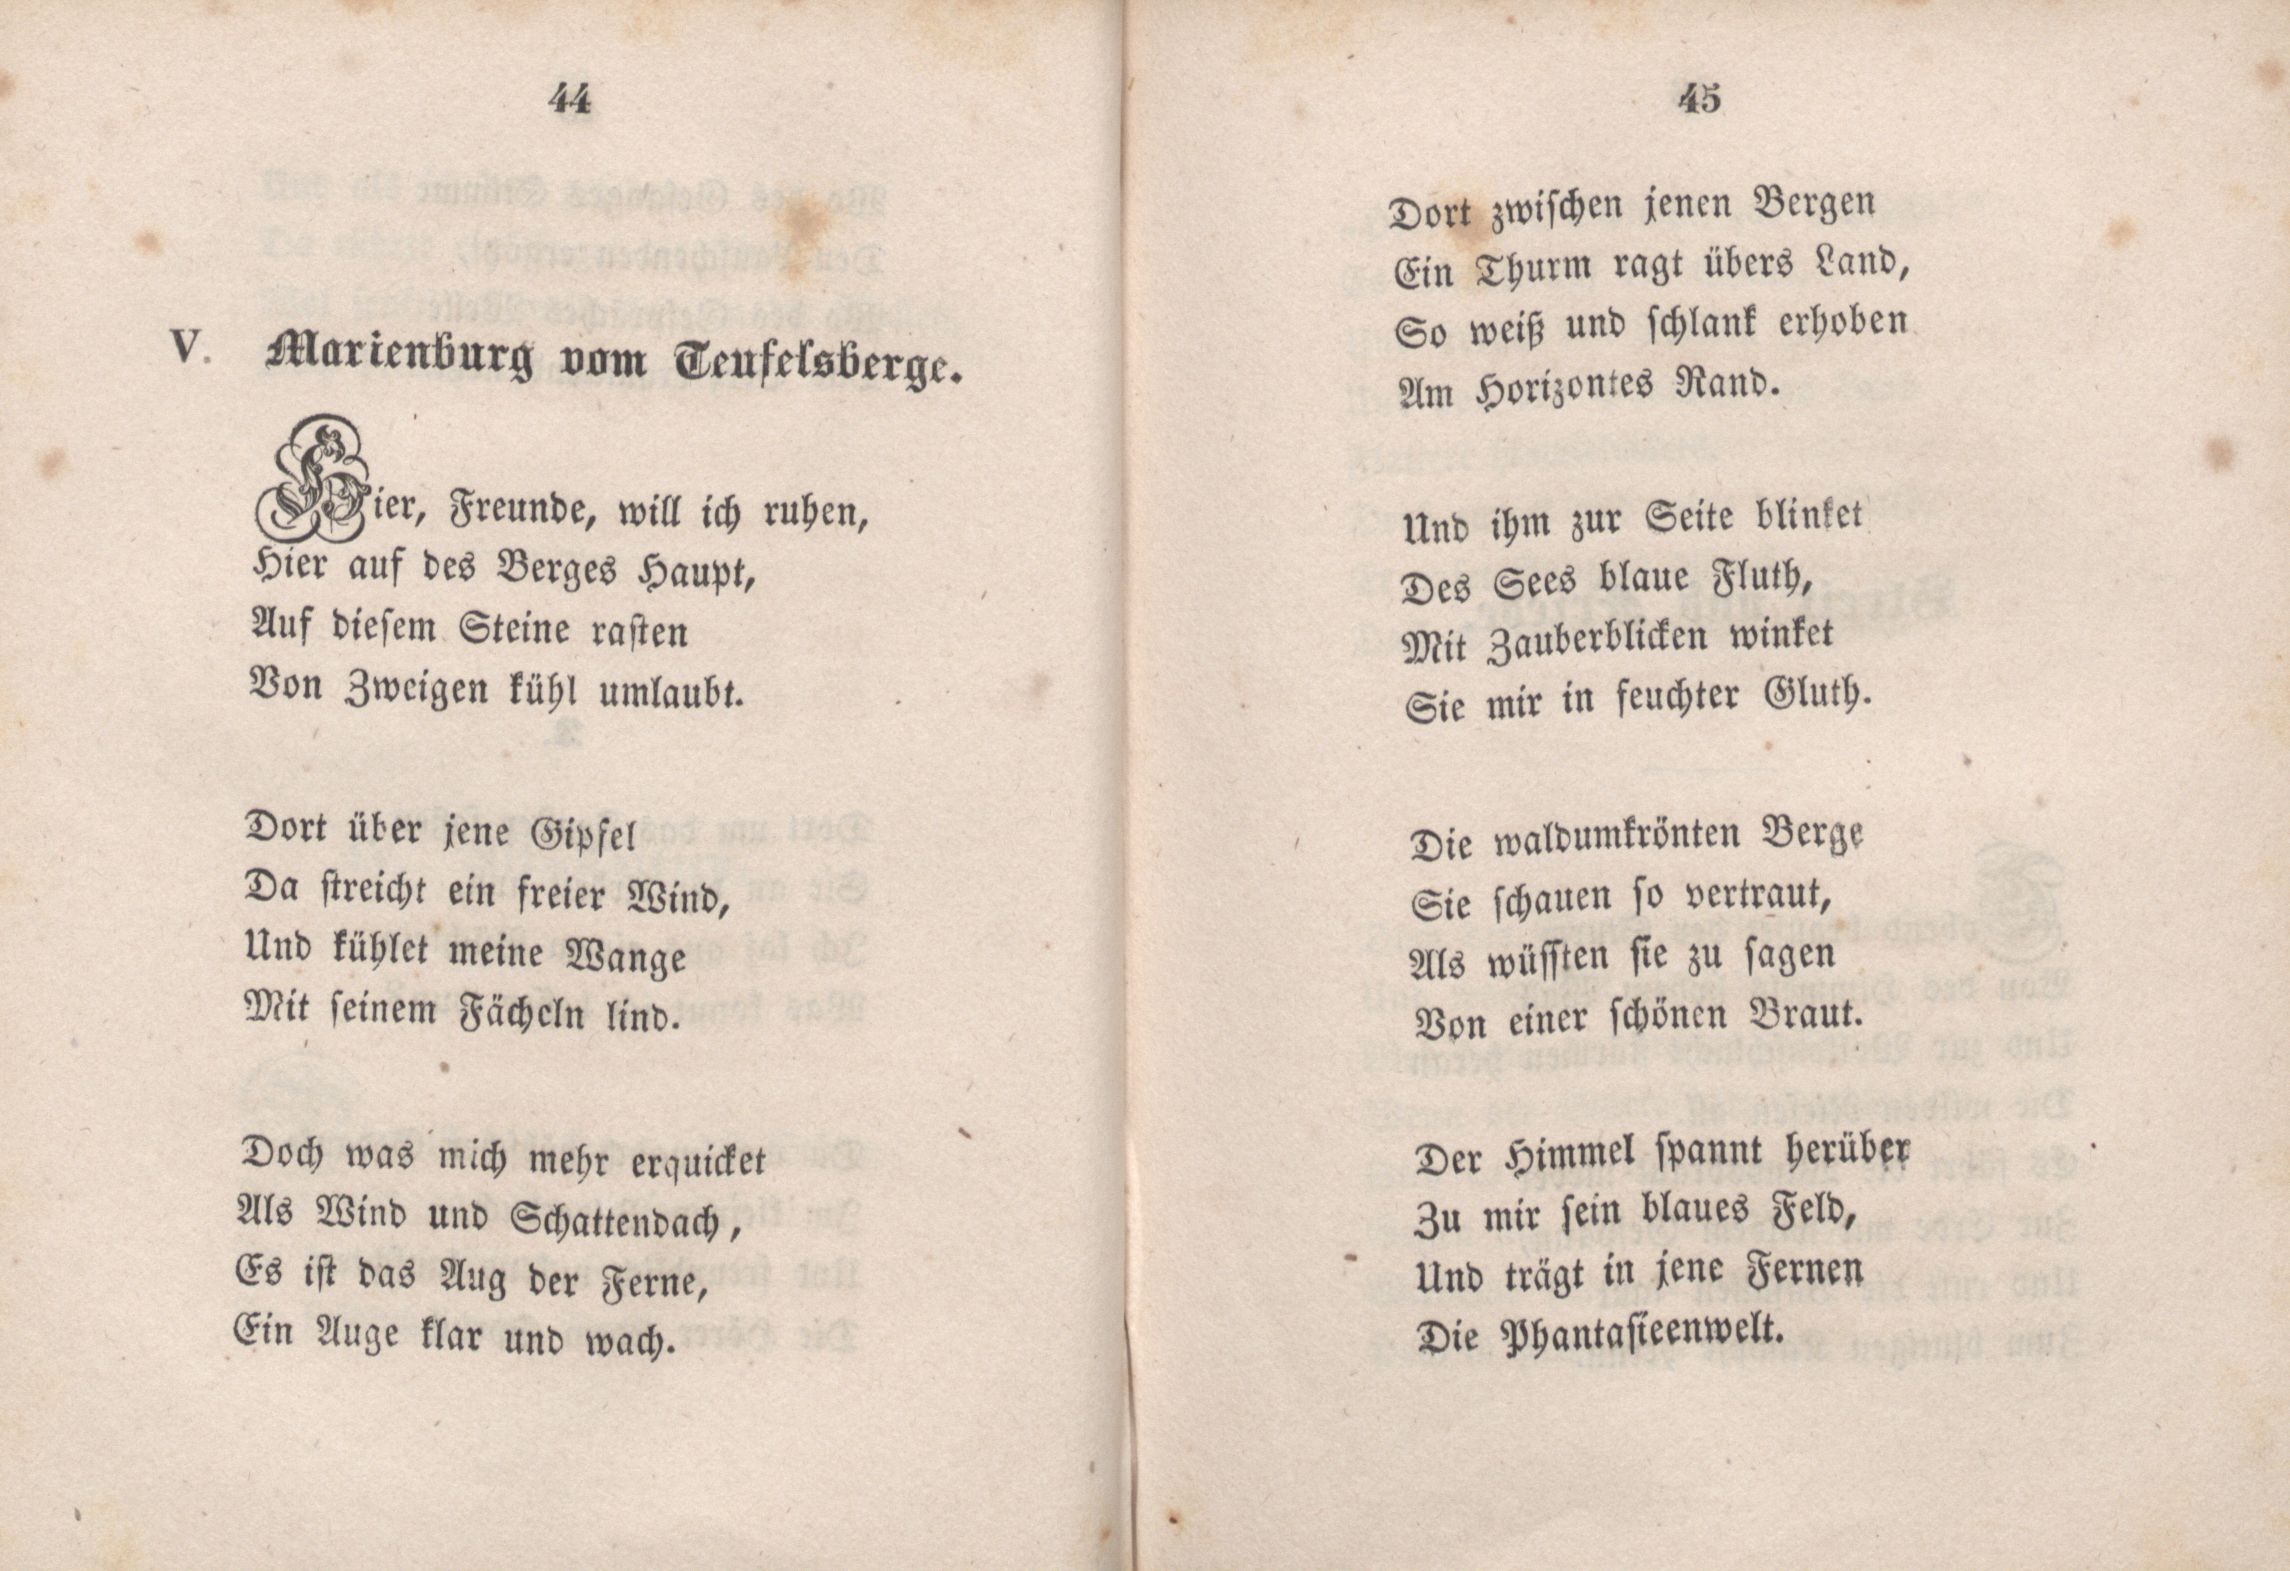 Marienburg vom Teufelsberge (1846) | 1. (44-45) Main body of text